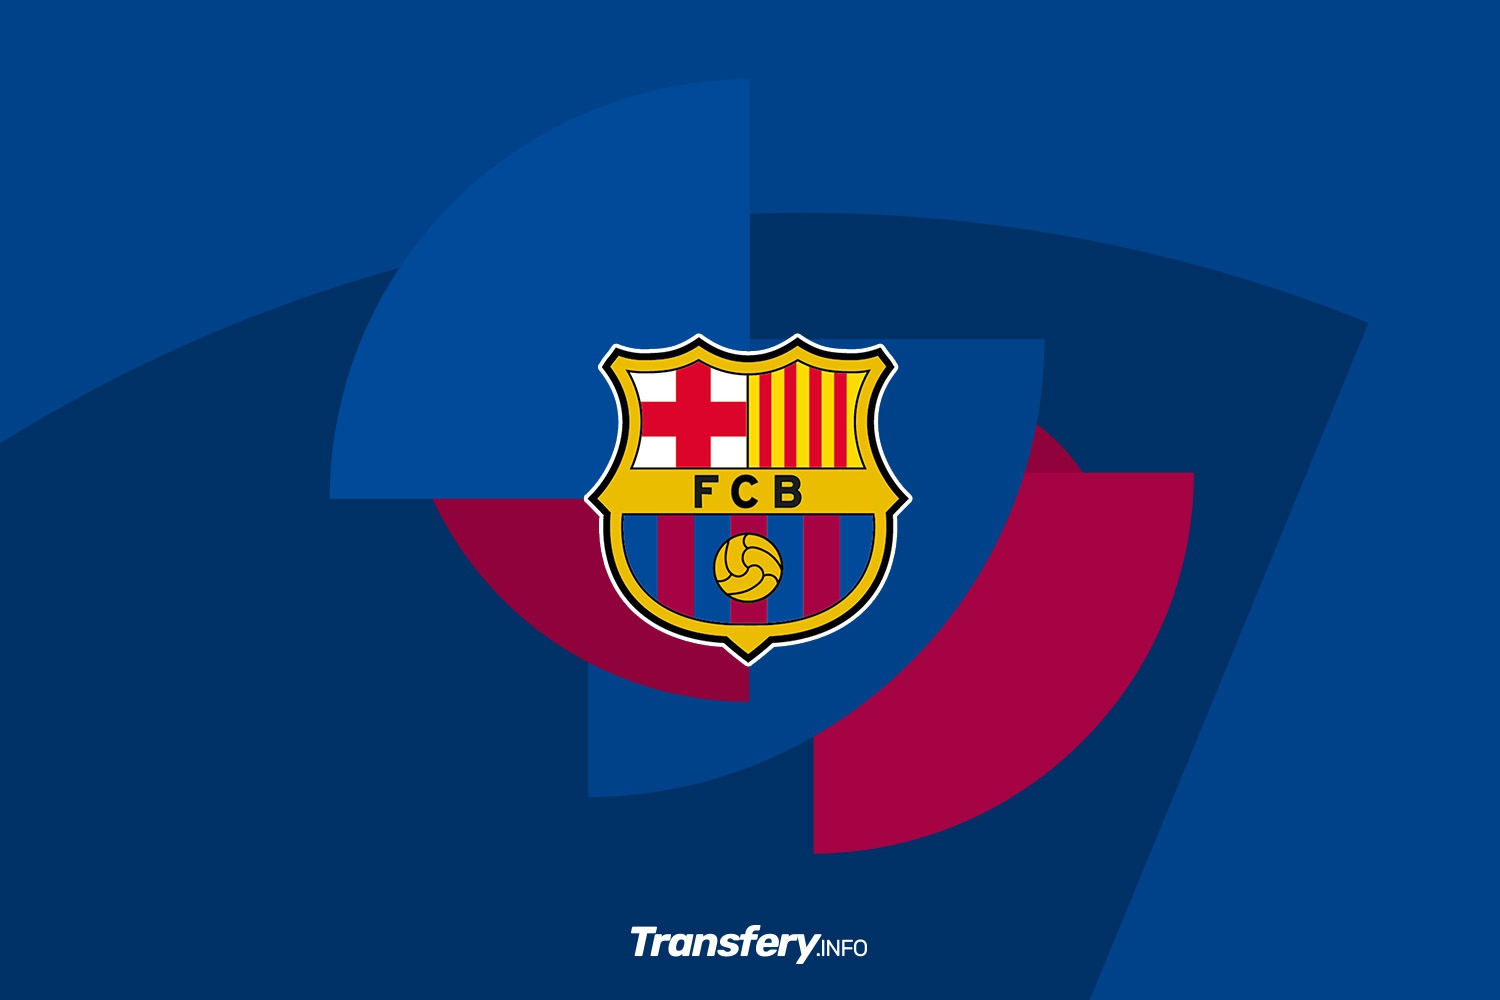 FC Barcelona straciła porozumienie z piłkarzem. Ligowy rywal może wkroczyć do akcji